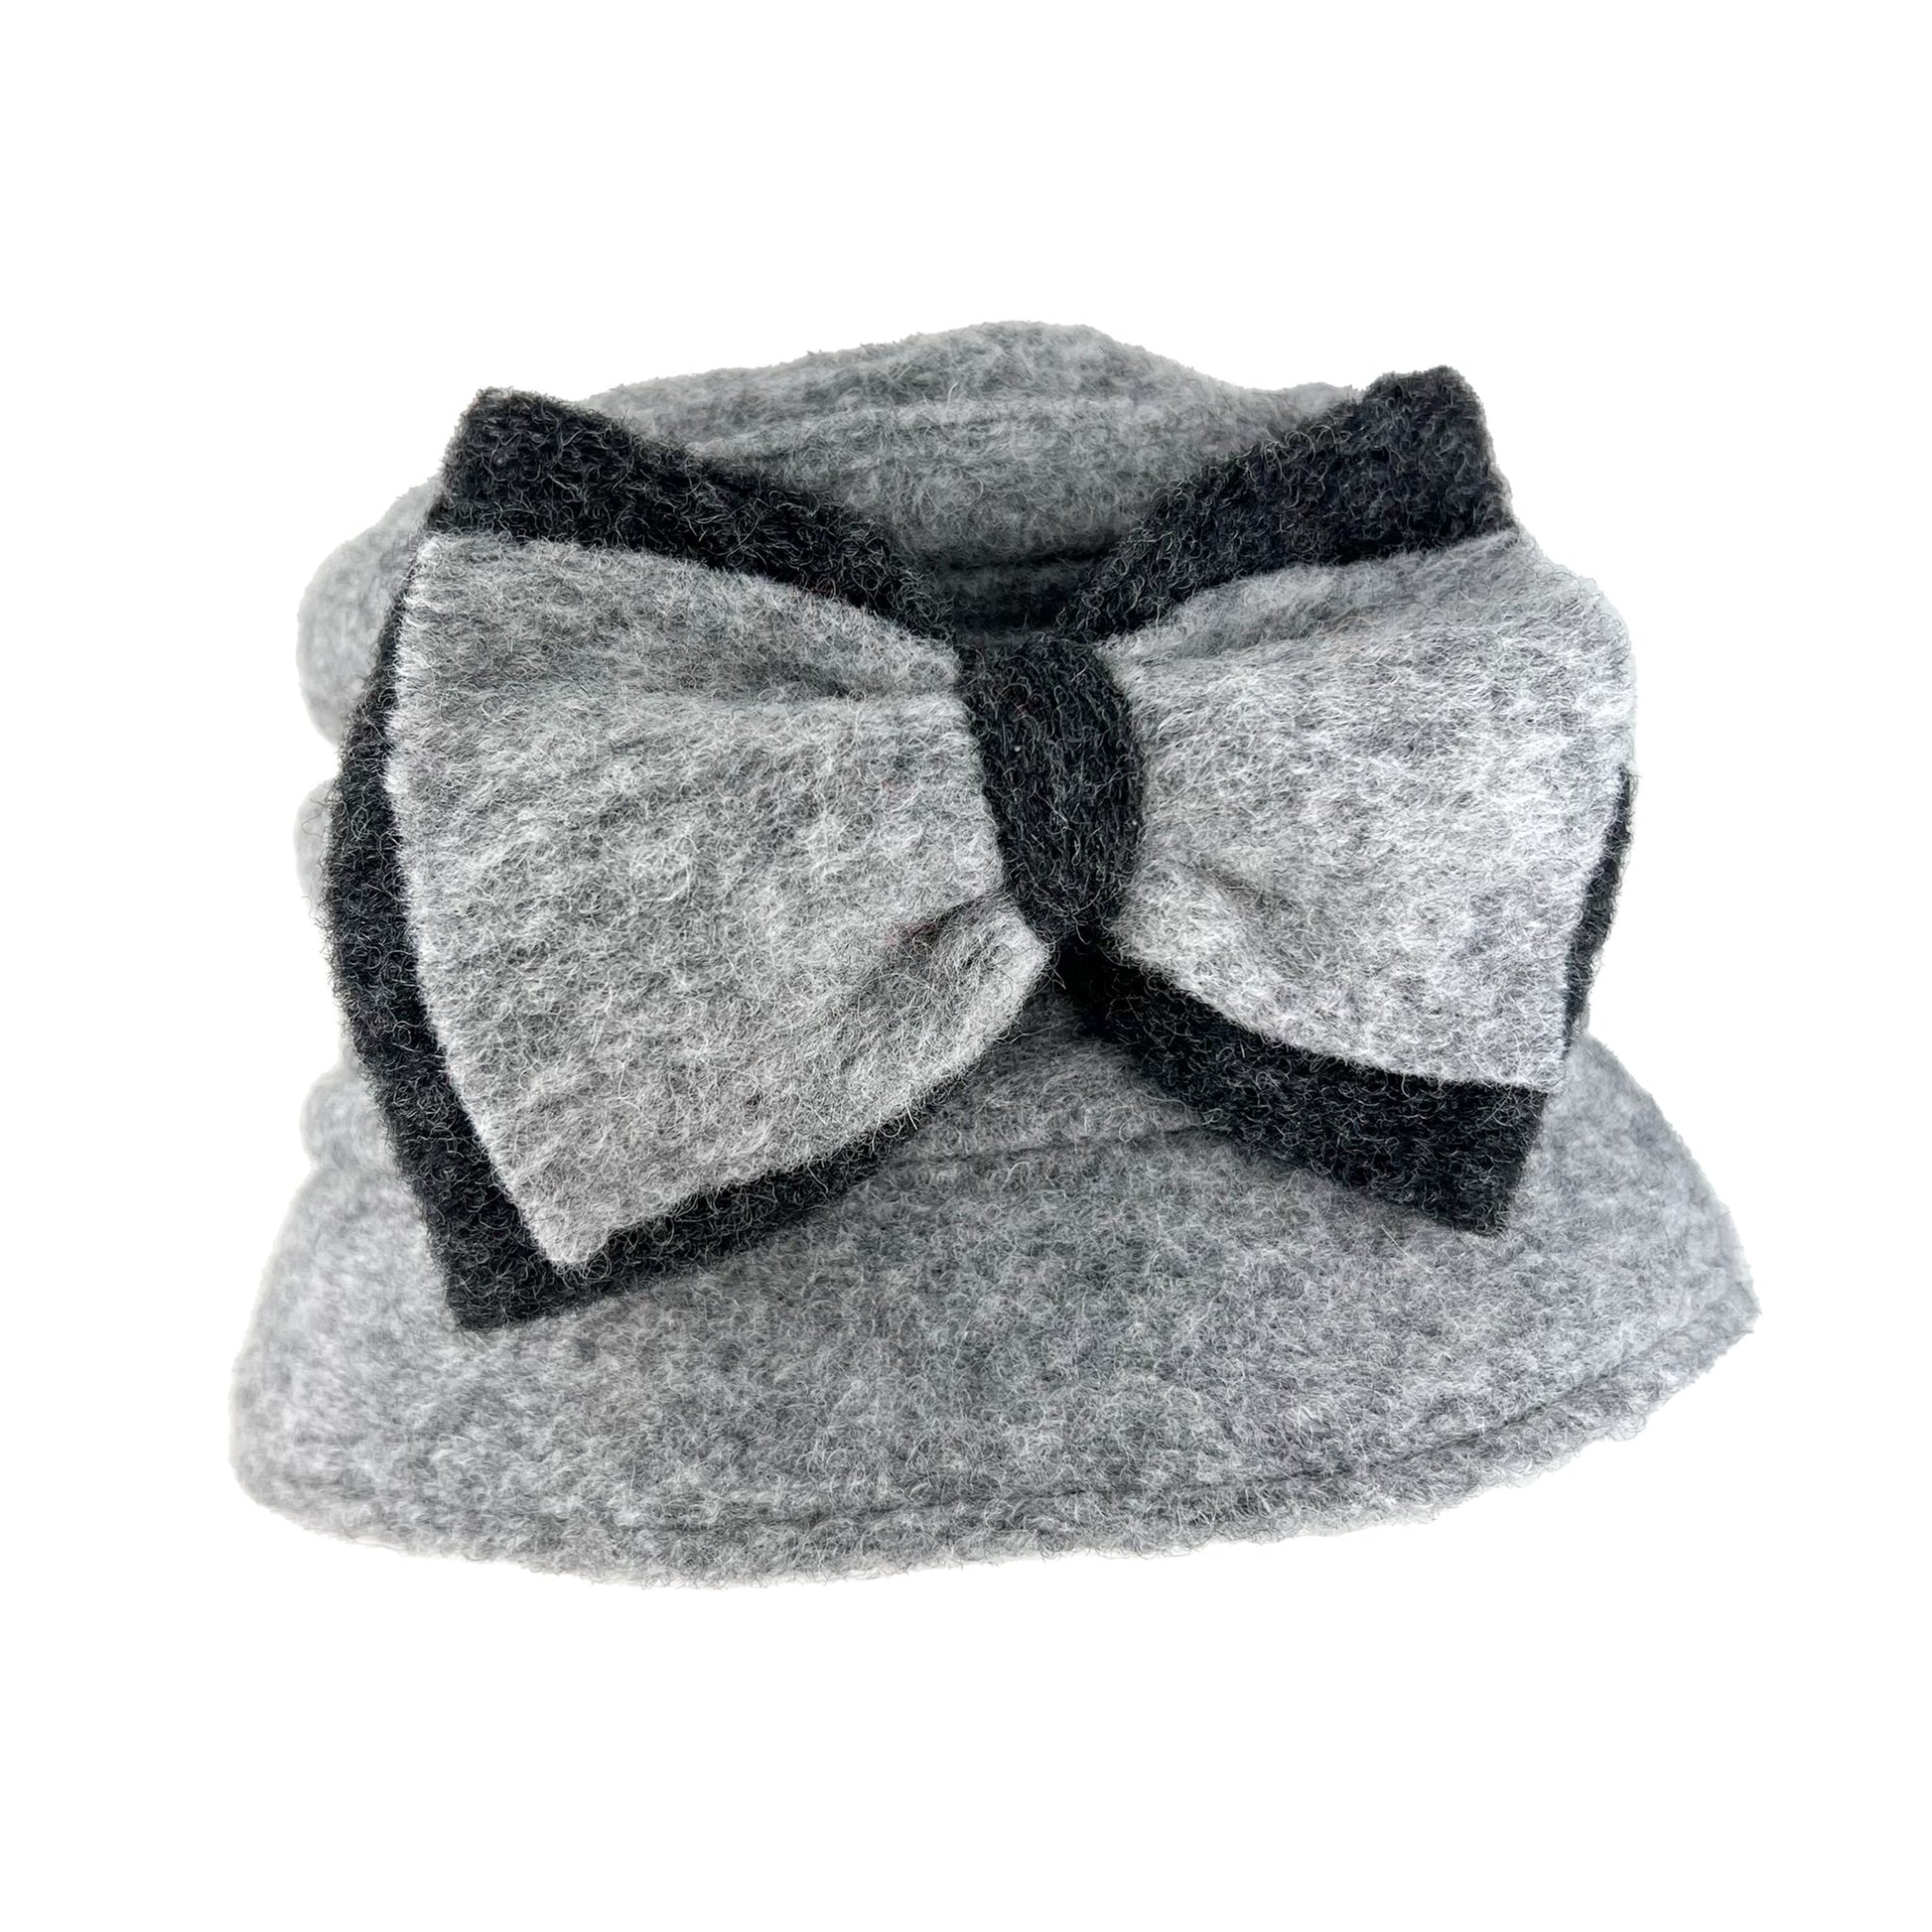 Elisabet - wool hat - grey/black - nammi.isÓfeigur